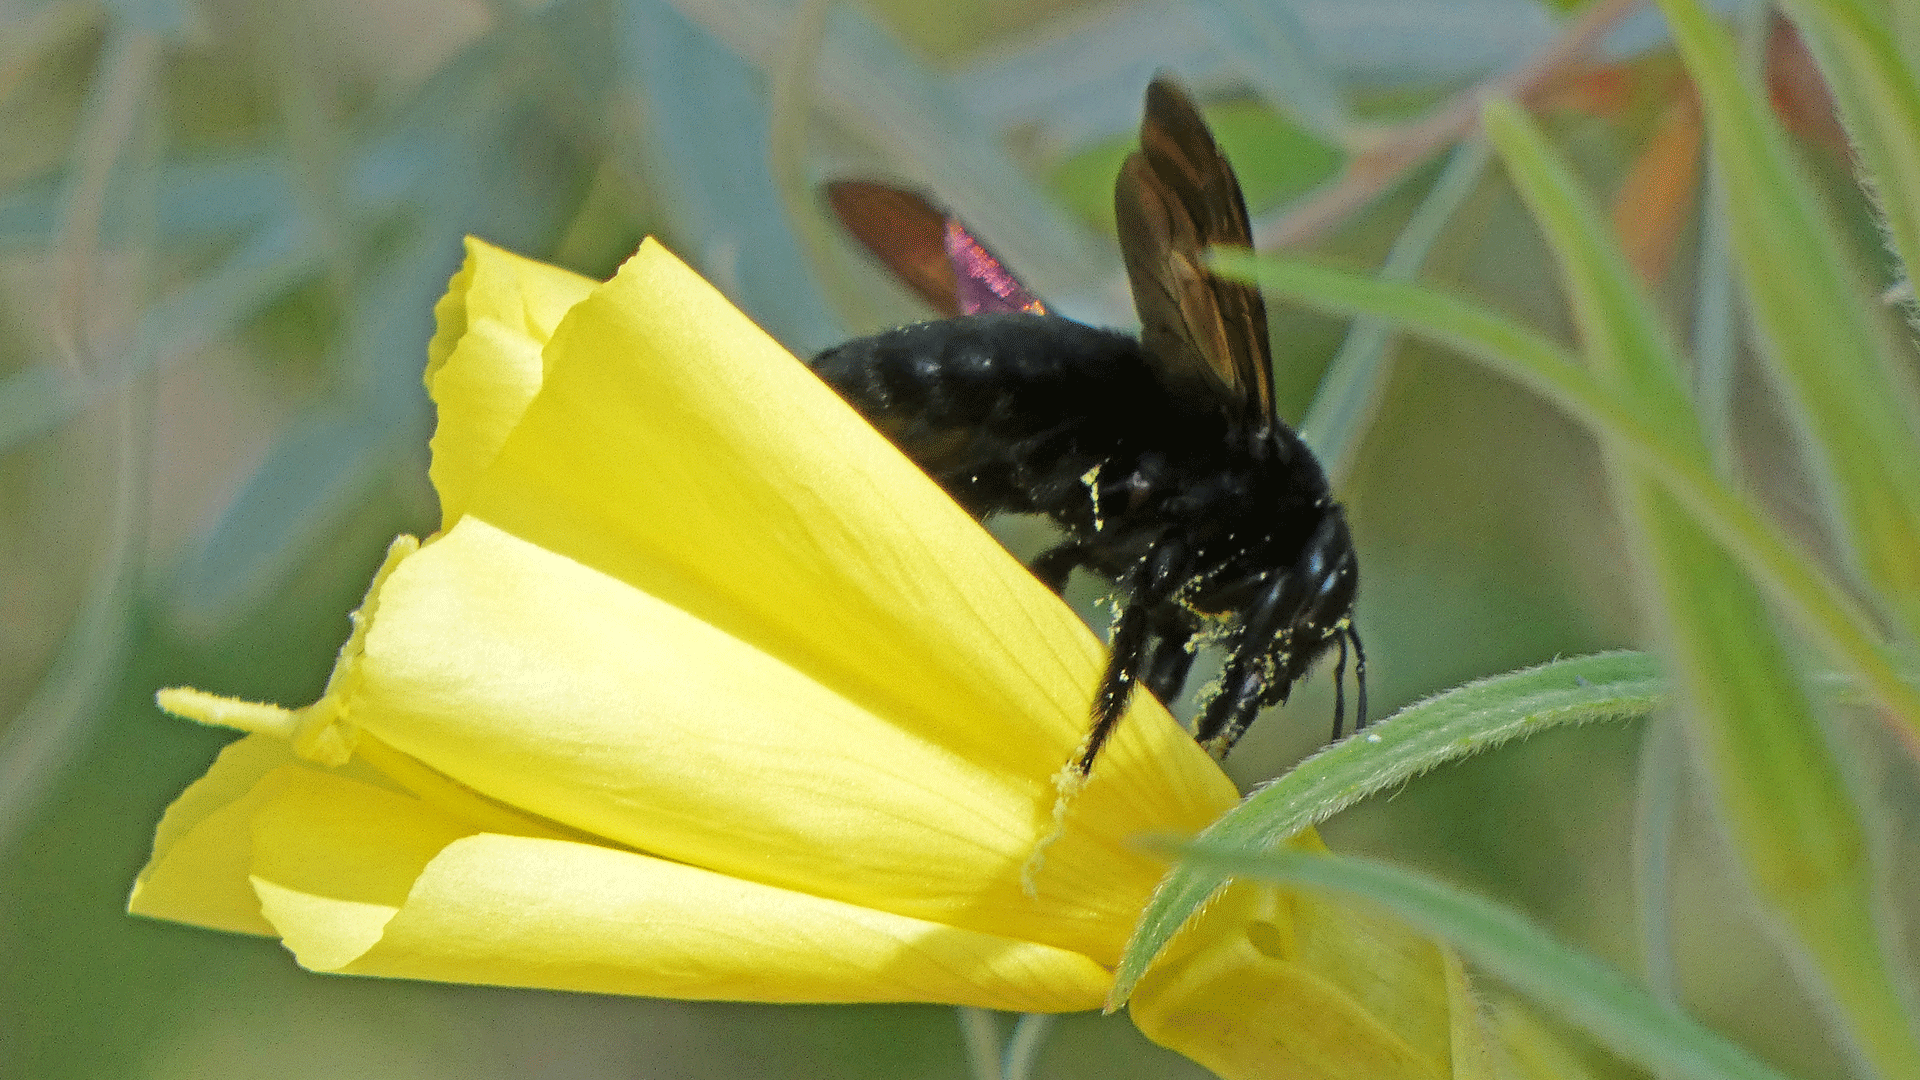 The same carpenter bee robbing nectar